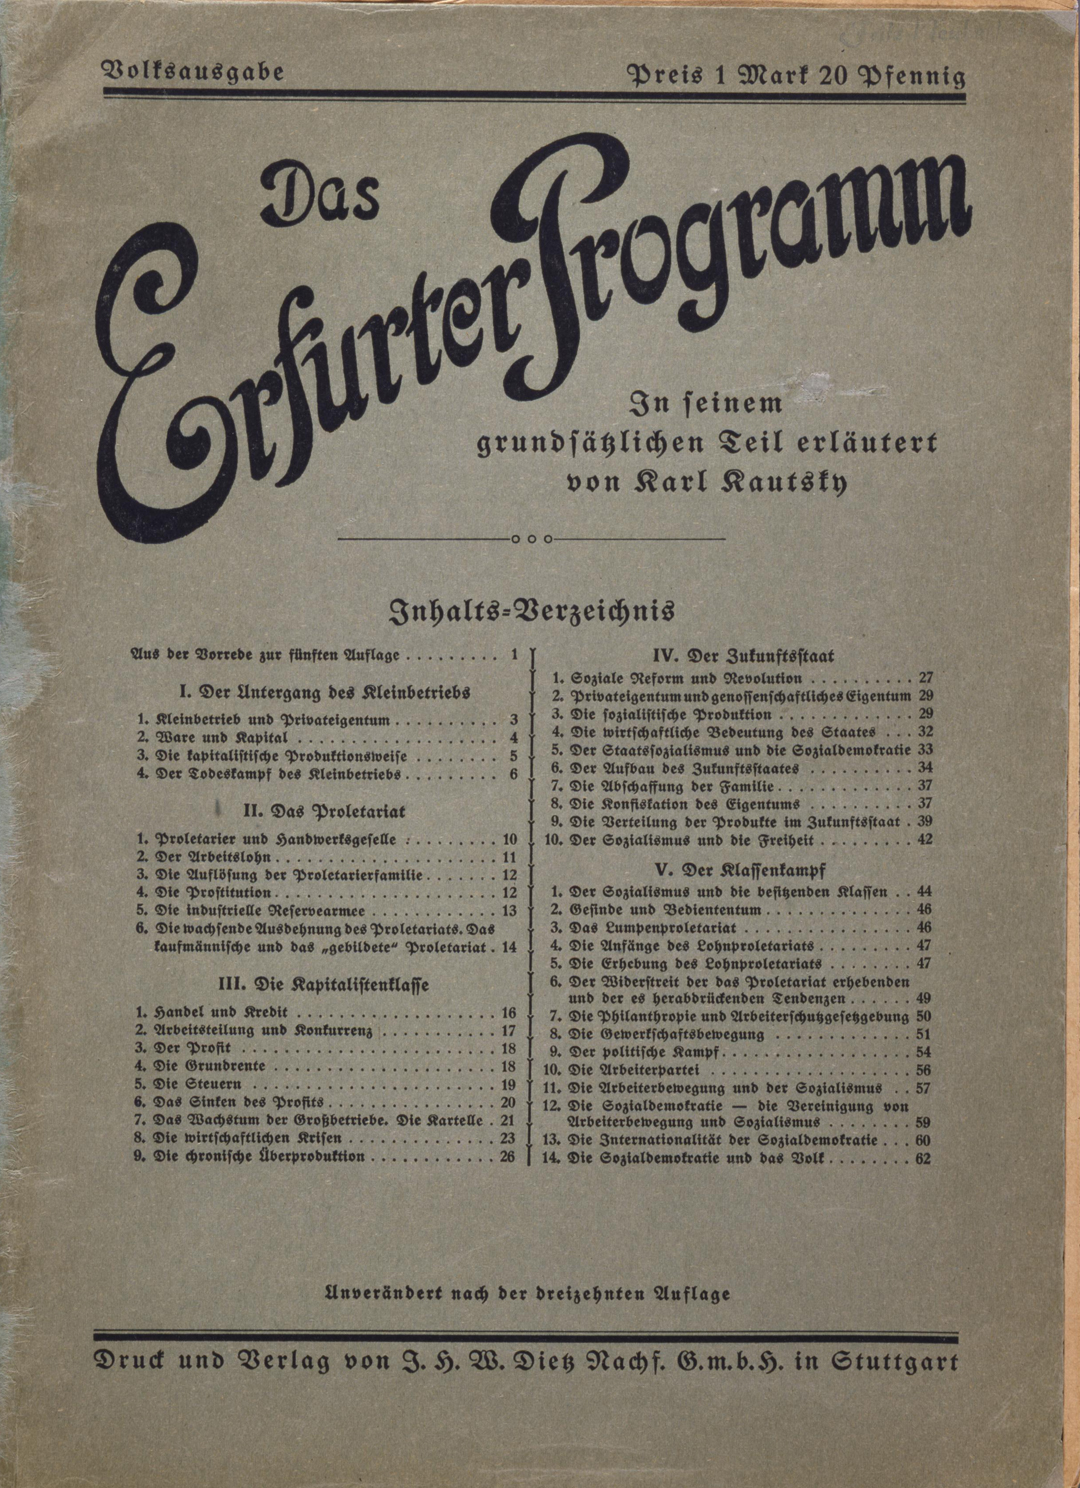 Deckblatt des Erfurter Programms von 1891